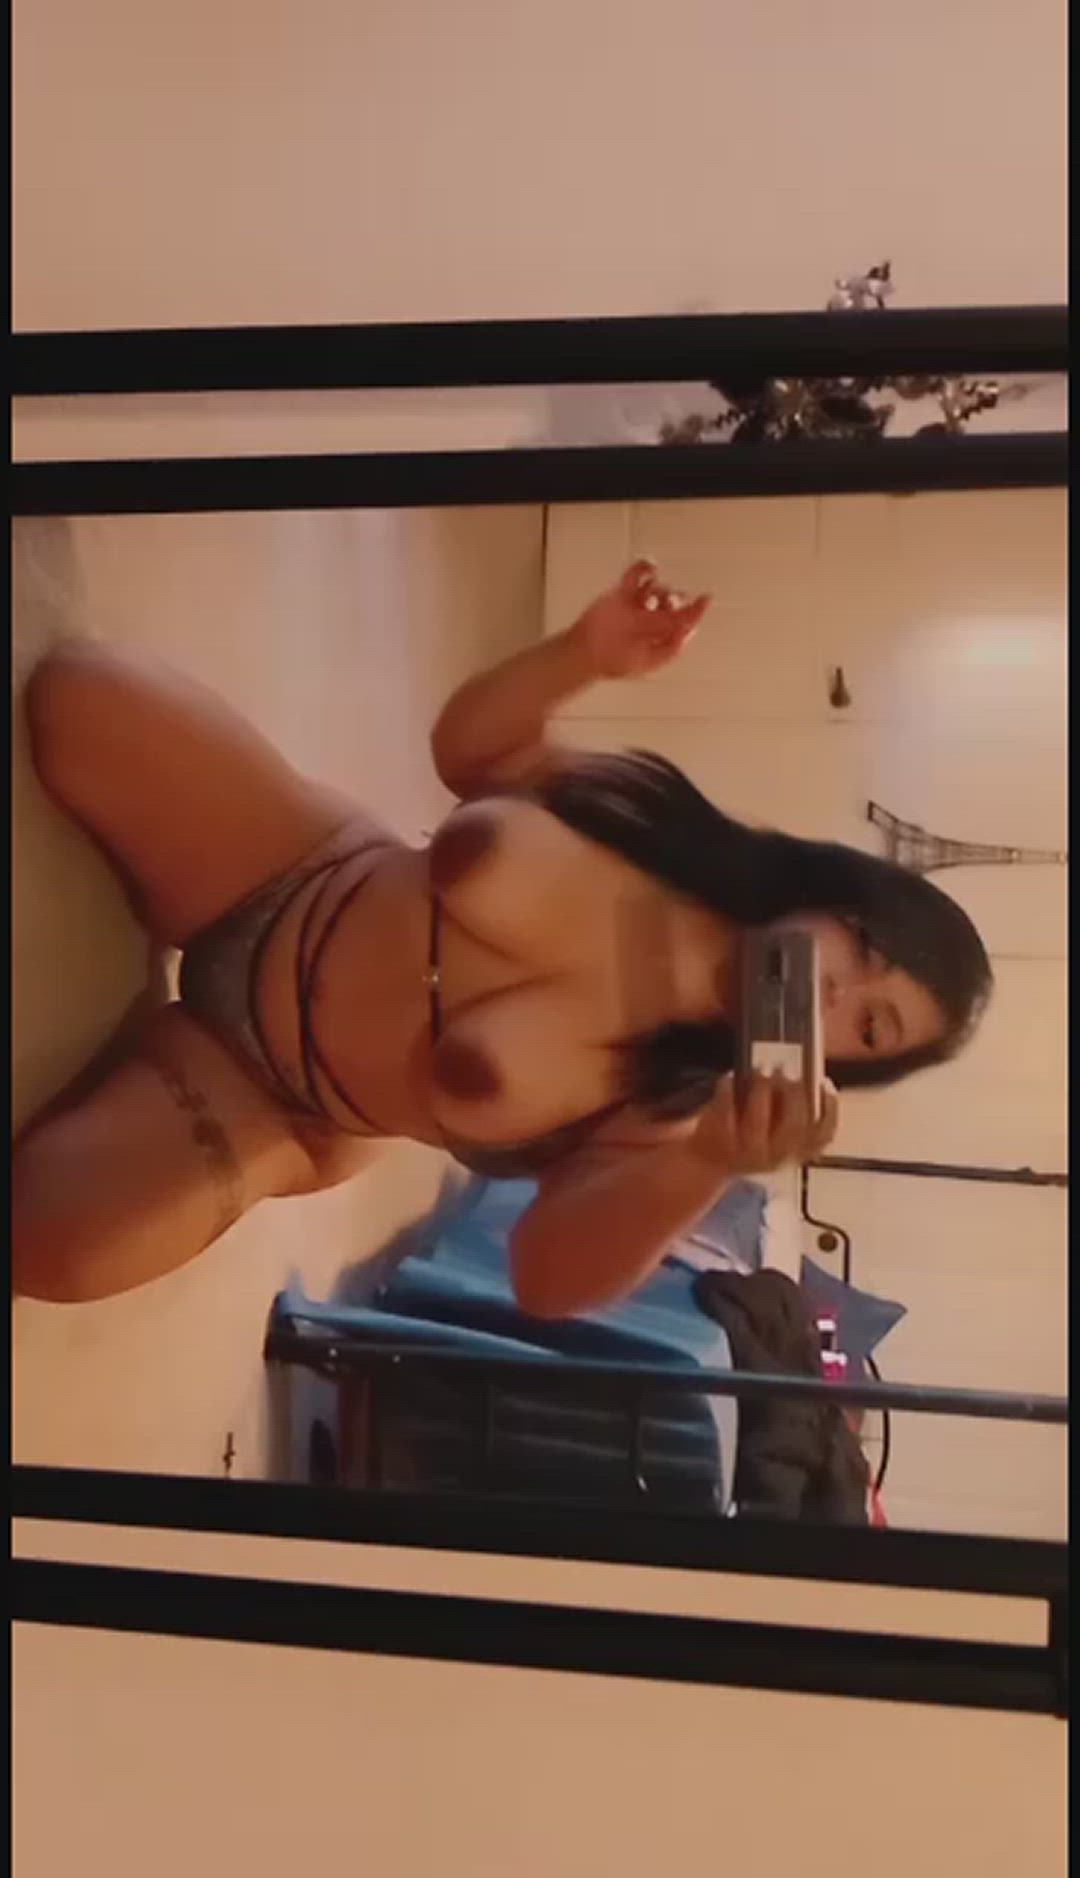 Ass porn video with onlyfans model dezidank <strong>@dezidank</strong>